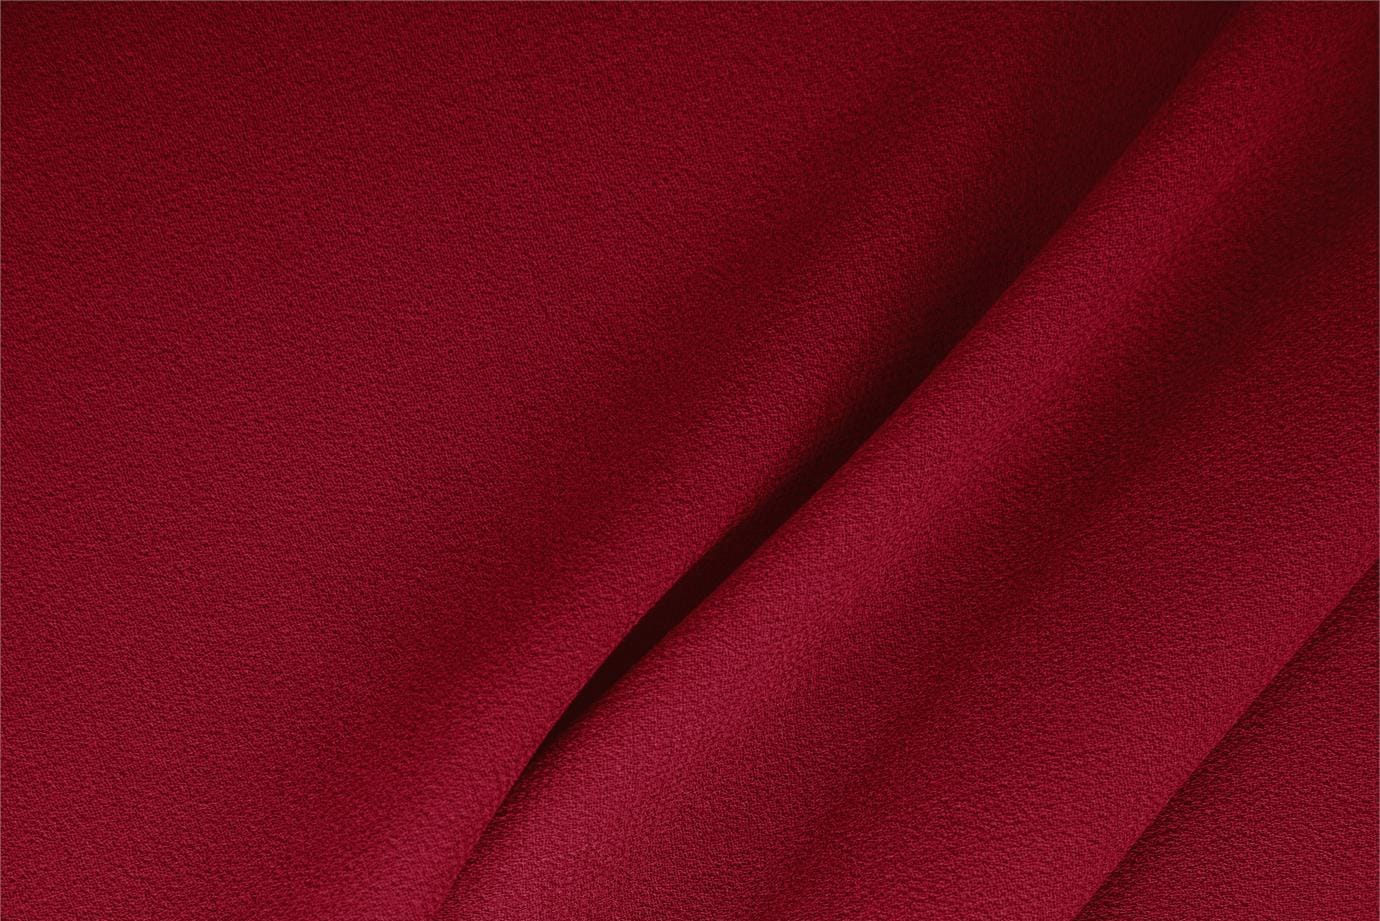 Tessuto Doppia Crepella di Lana Rosso Campari in Lana per abbigliamento